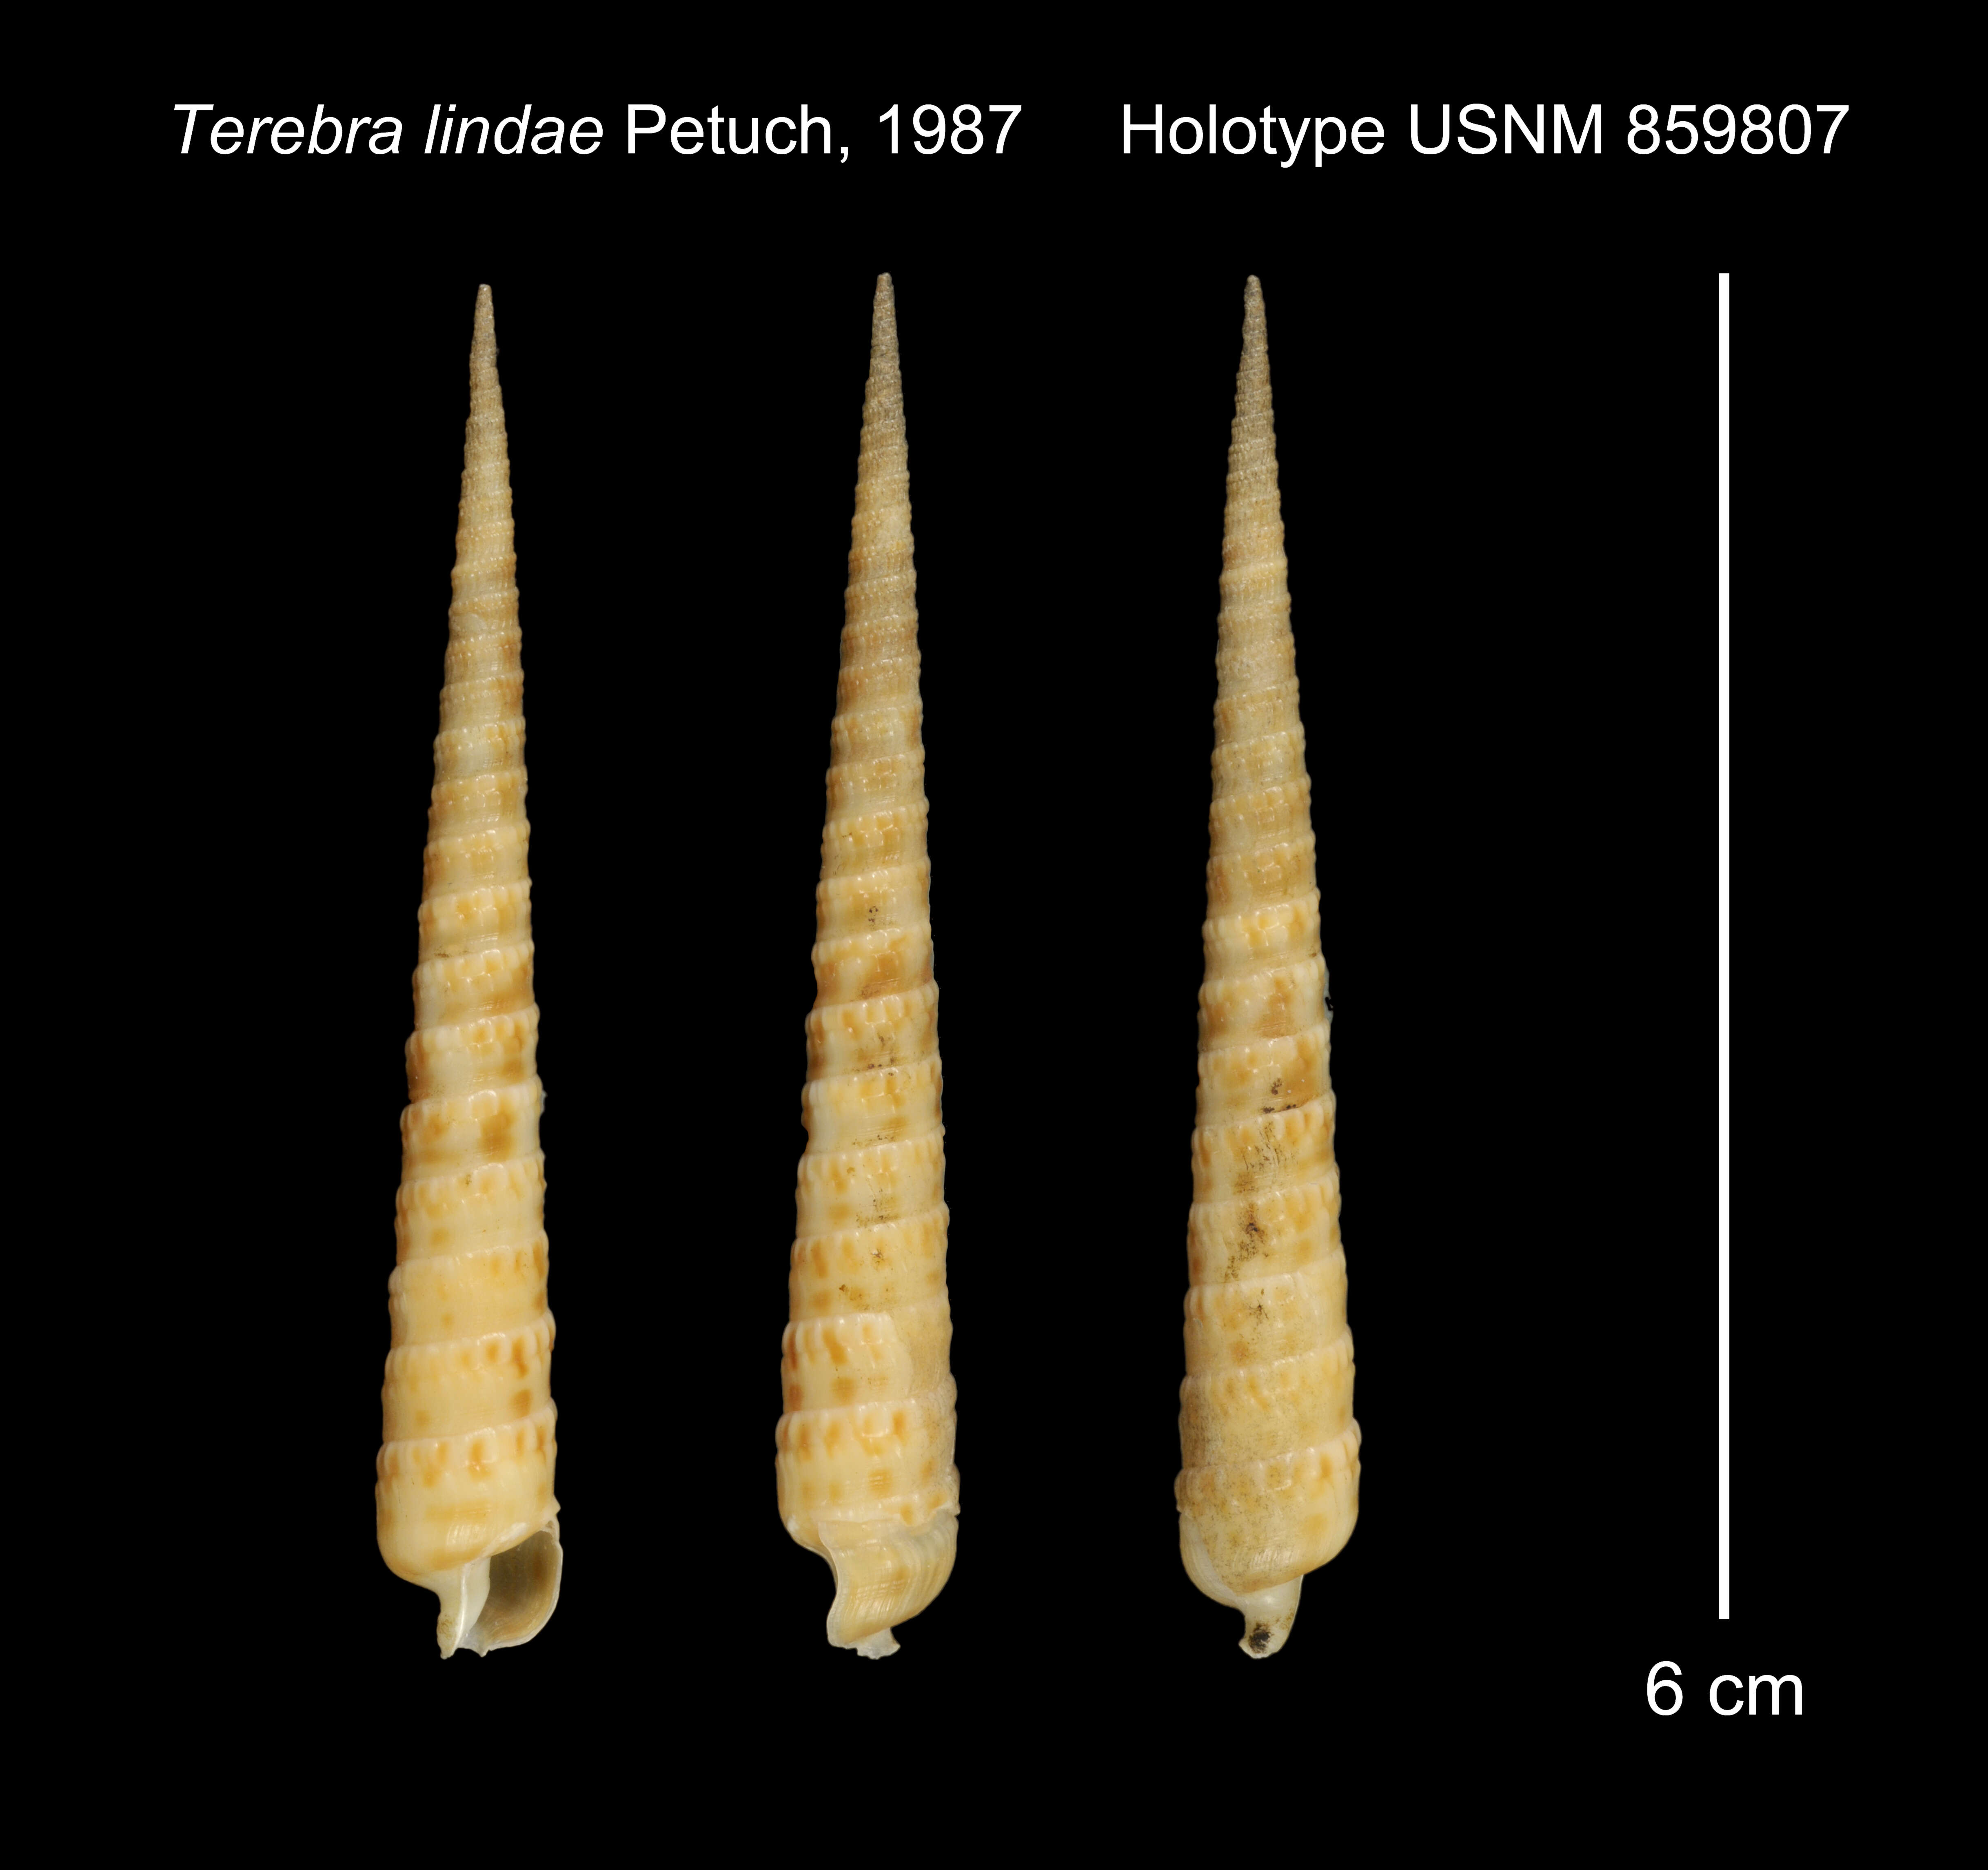 Image of Terebra lindae Petuch 1987